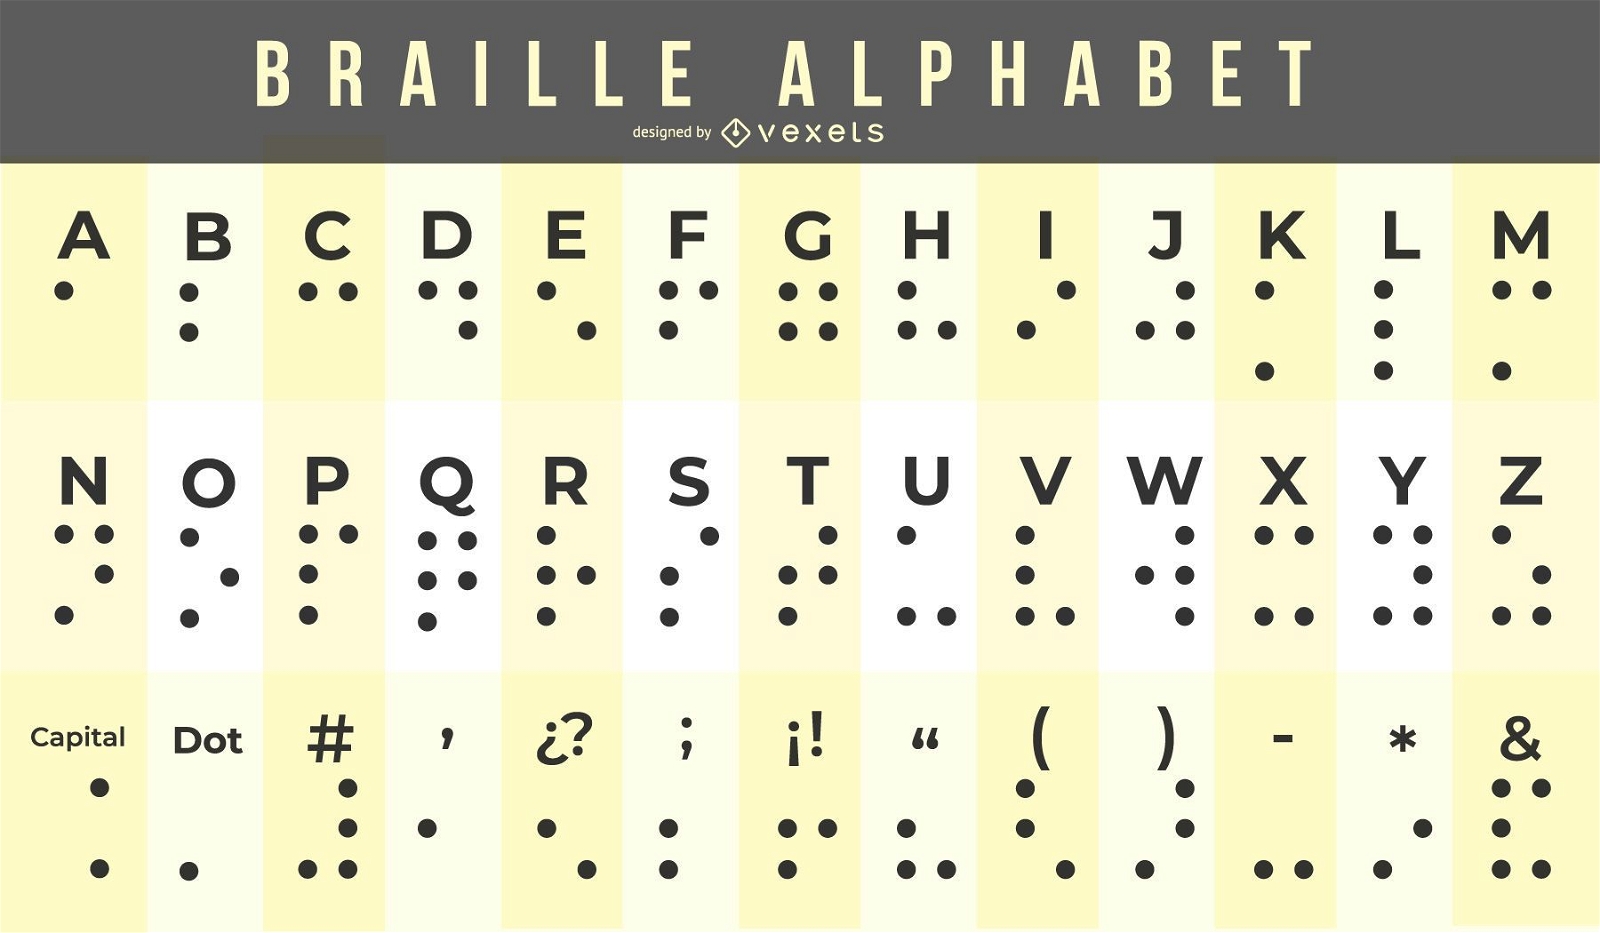 Total 85+ imagen abecedario braille español - Ecover.mx